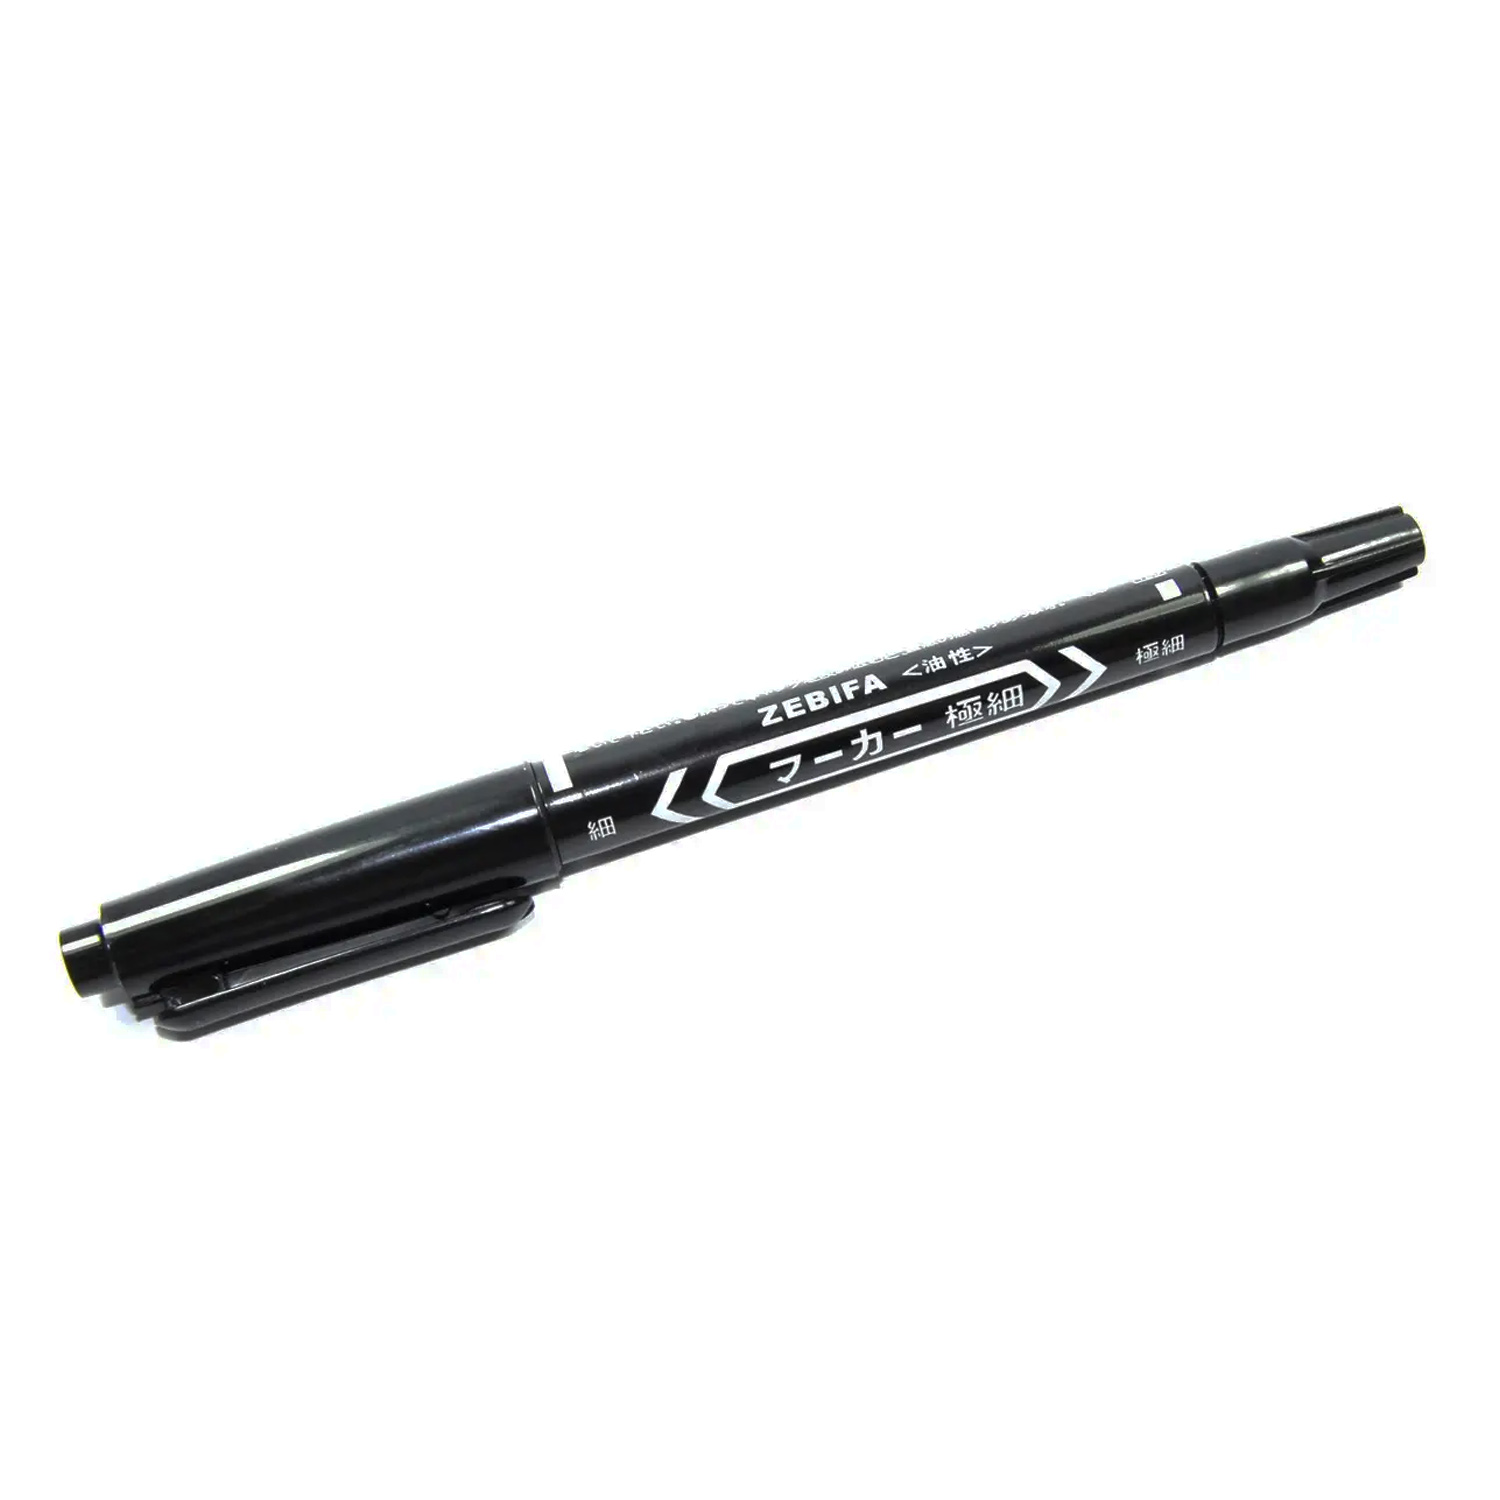 Маркер для печатных плат ZEBIFA MO-120-MC-BK, черный, двухсторонний (1,5 мм/0,5 мм) , фото